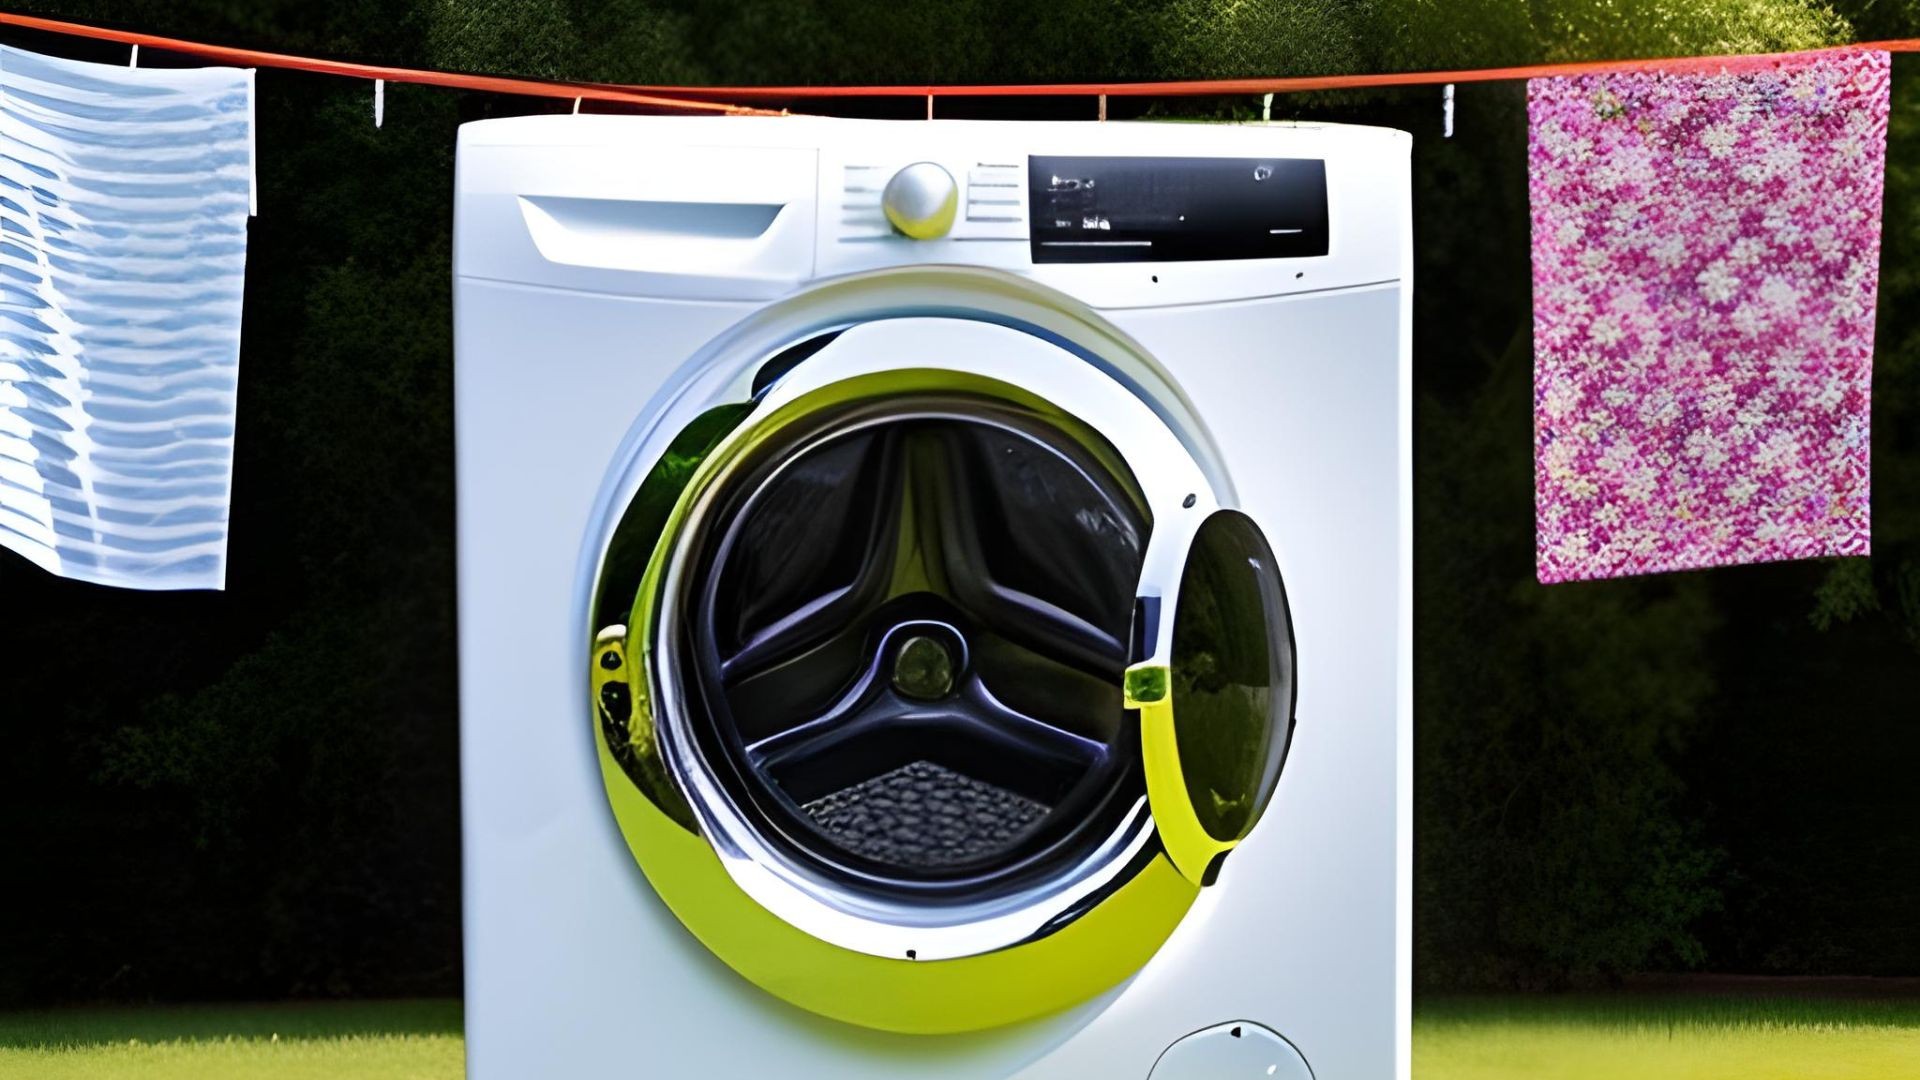 clothesline vs tumble dryer